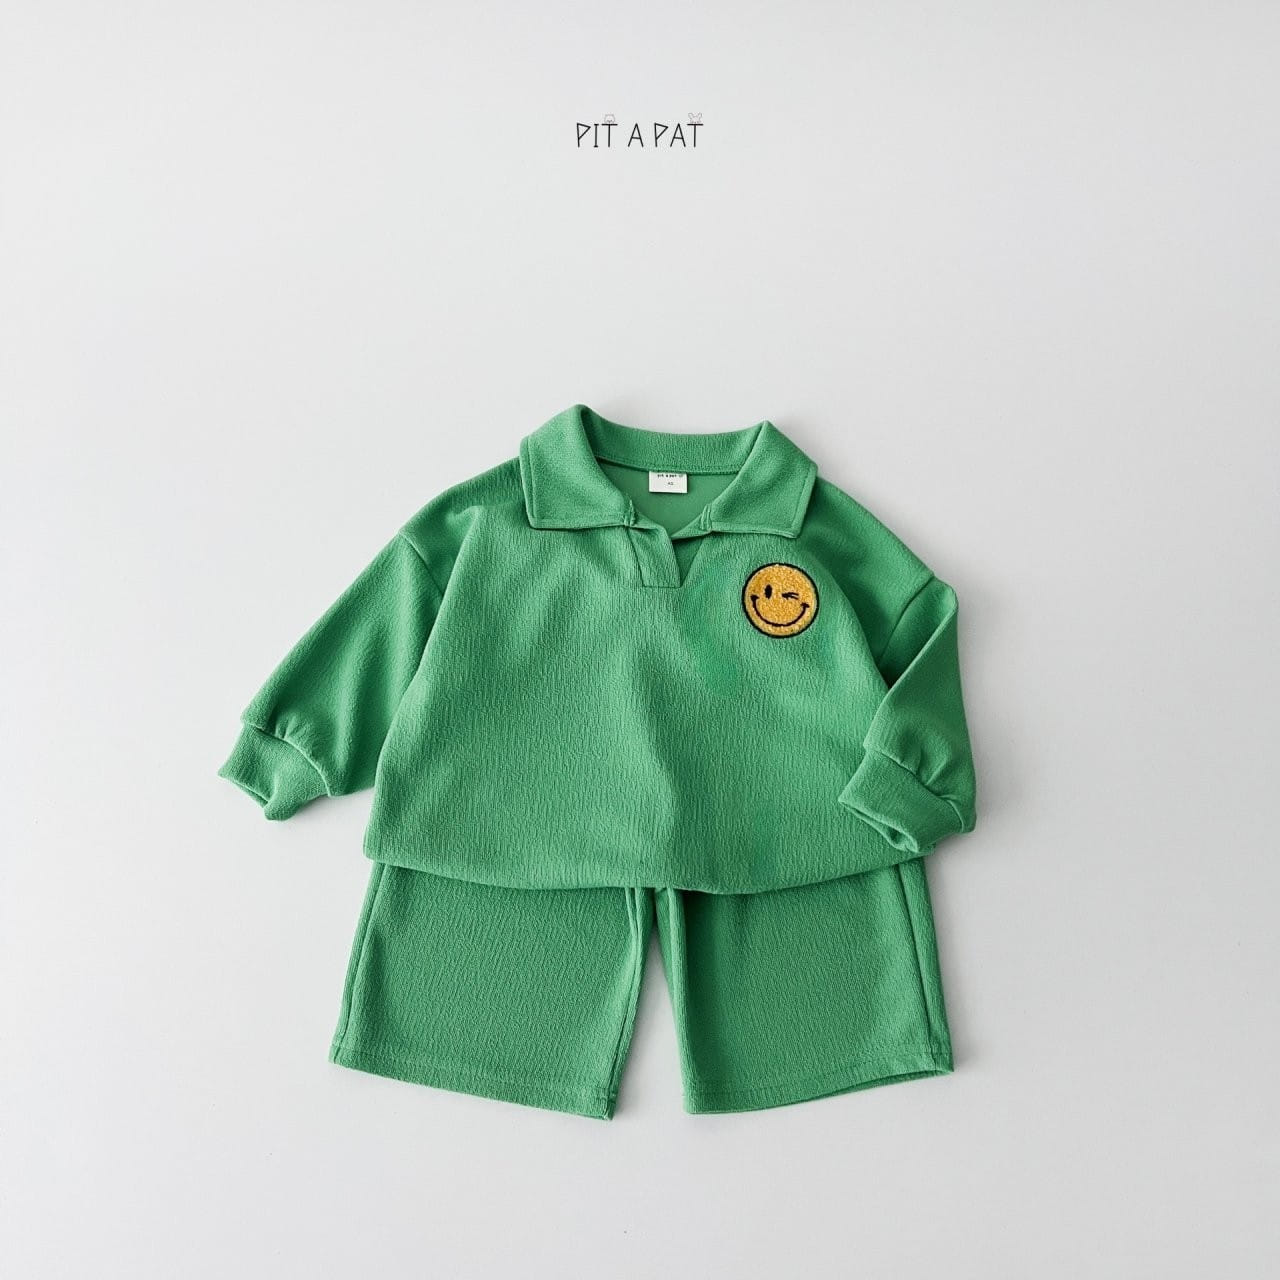 Pitapat - Korean Children Fashion - #todddlerfashion - Smiley Terry Top Bottom Set - 9